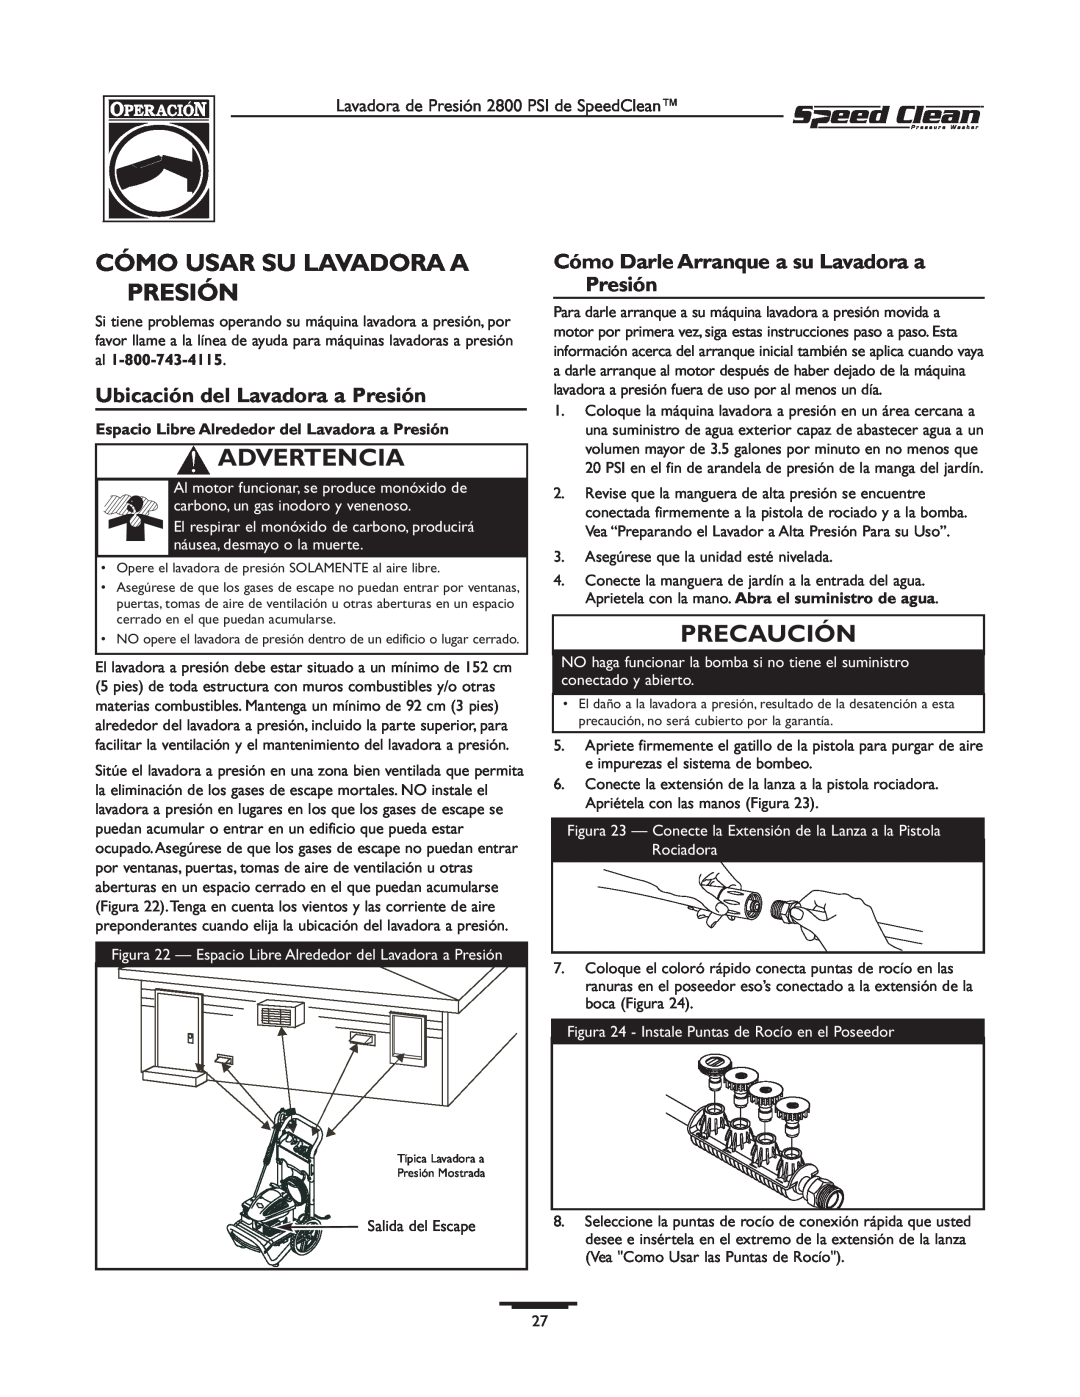 Briggs & Stratton 020212-0 Cómo Usar Su Lavadora A Presión, Ubicación del Lavadora a Presión, Advertencia, Precaución 